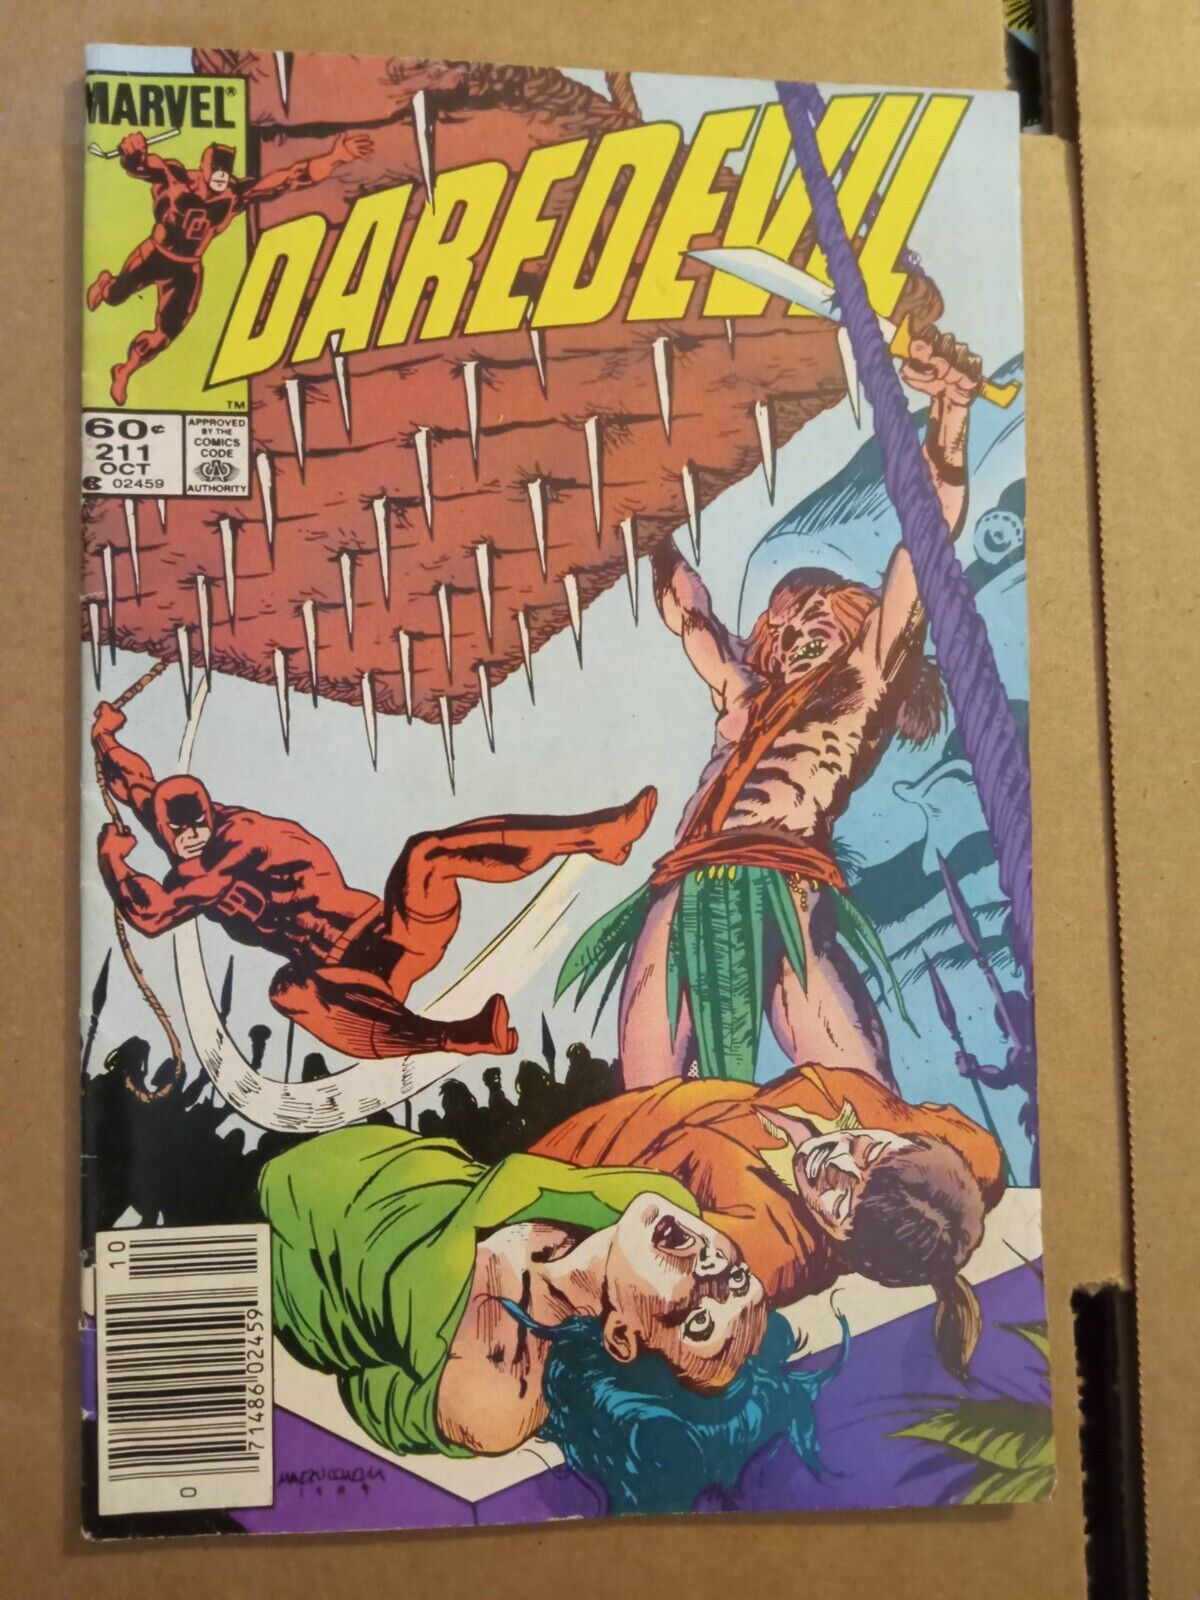 Lot of 2 Marvel Daredevil #211 & 212 copper comic books 1984 Mazzucchelli art